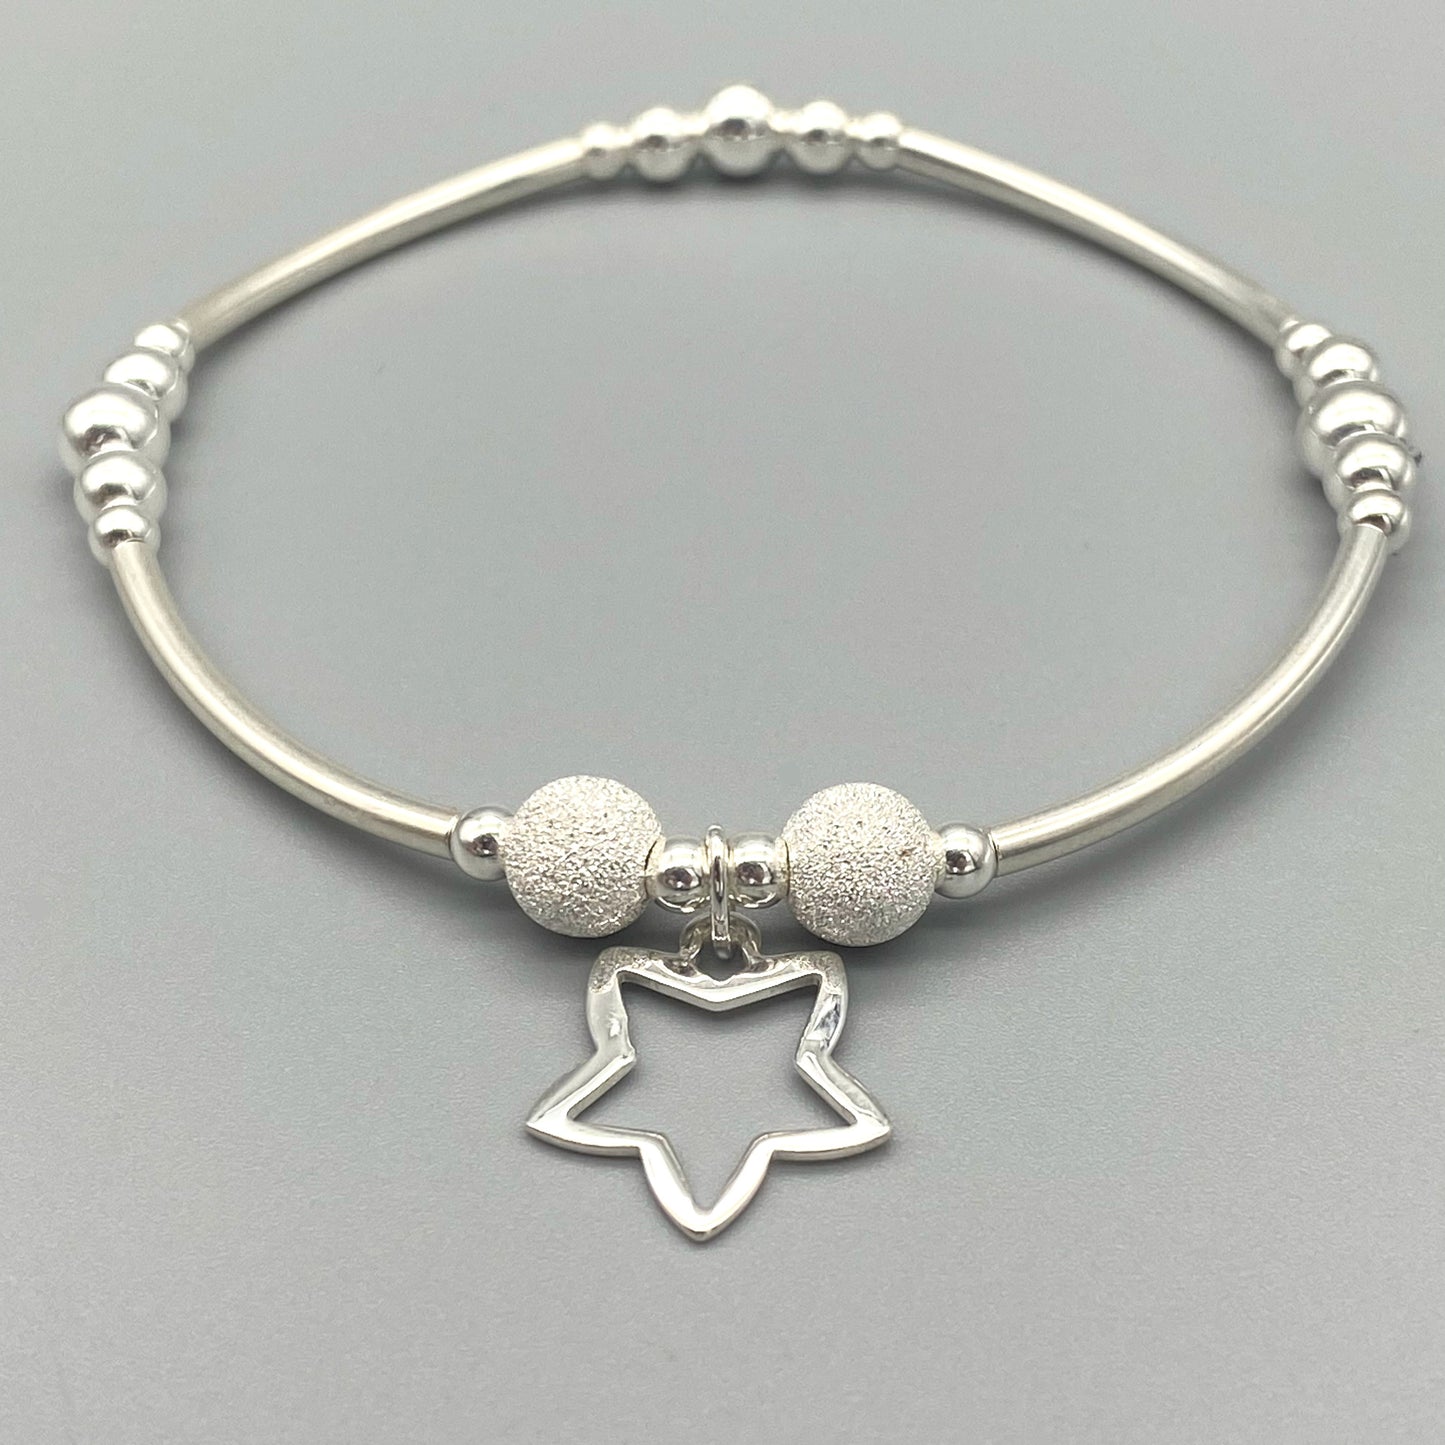 Open star charm sterling silver women's charm bracelet by My Silver Wish